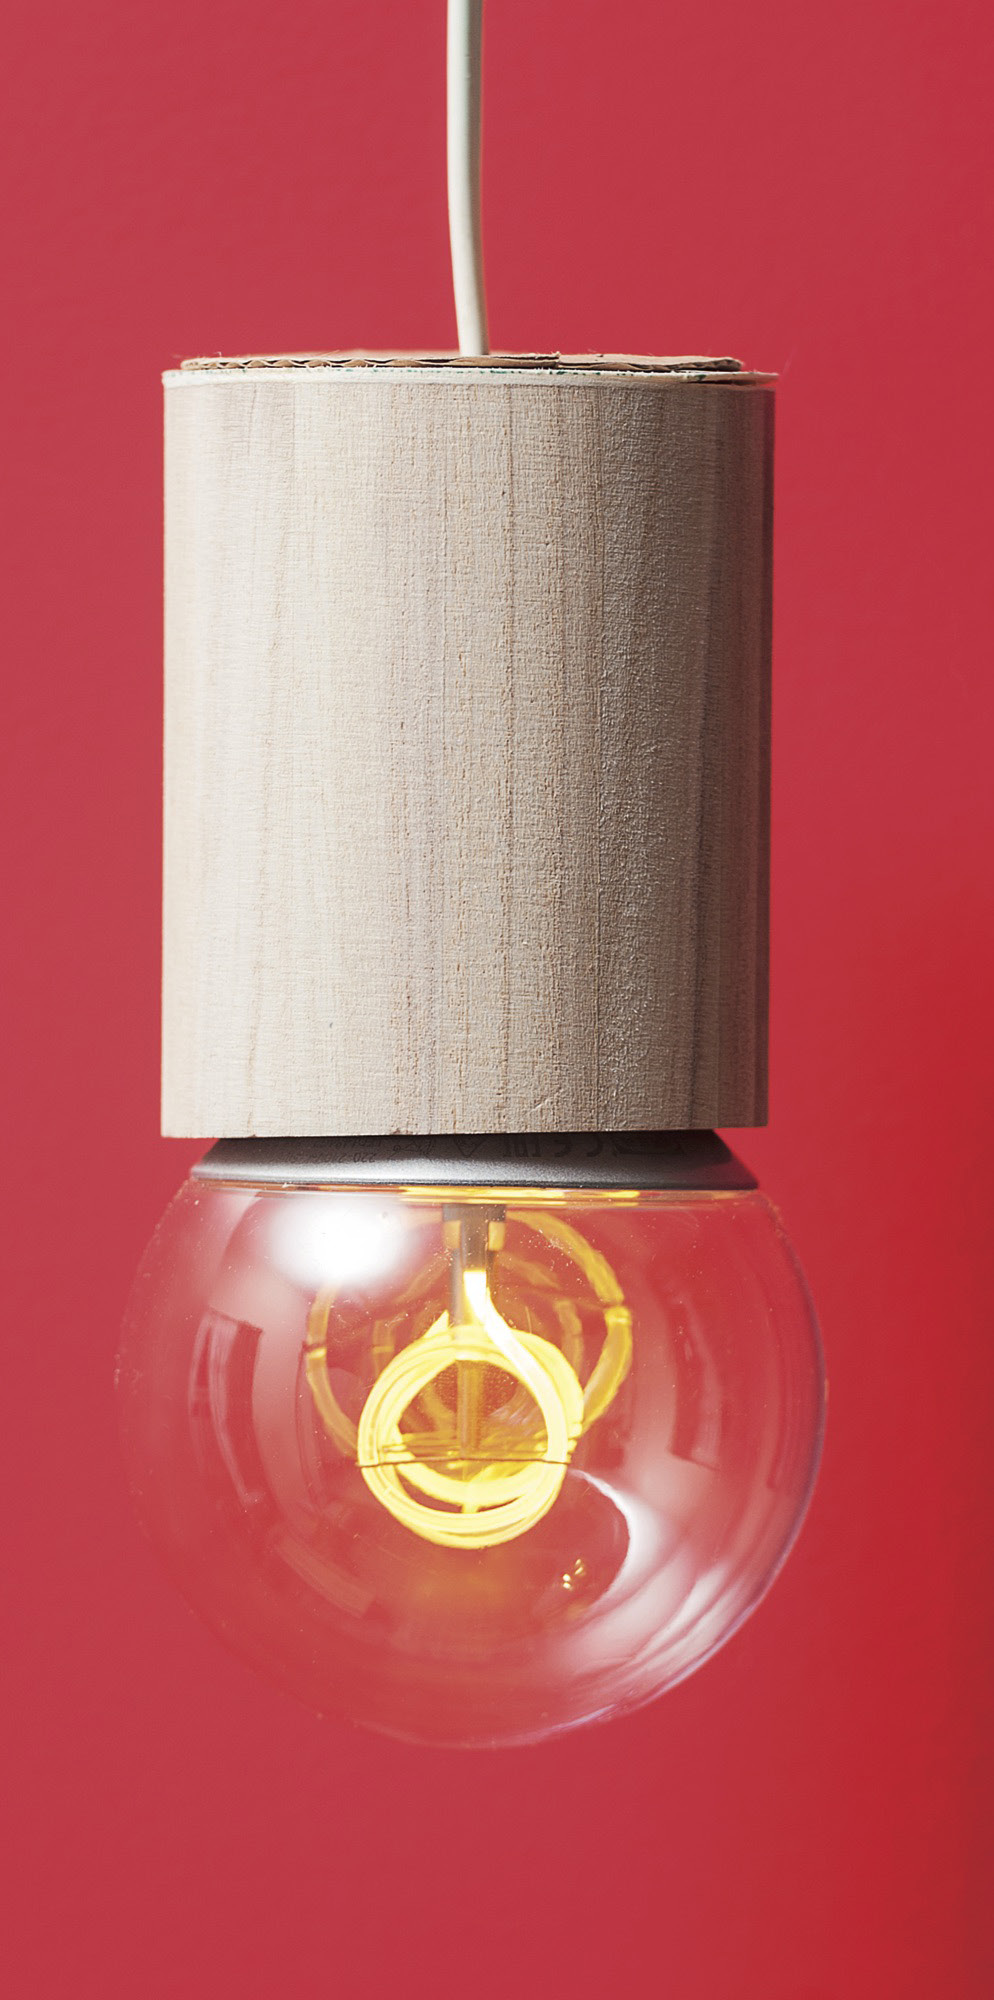 1. Lampe mit Stifteköcher: Anleitung 1. Bohren Sie in den Boden des Stifteköcher, mittig, ein ca. 7 mm großes Loch. 2.